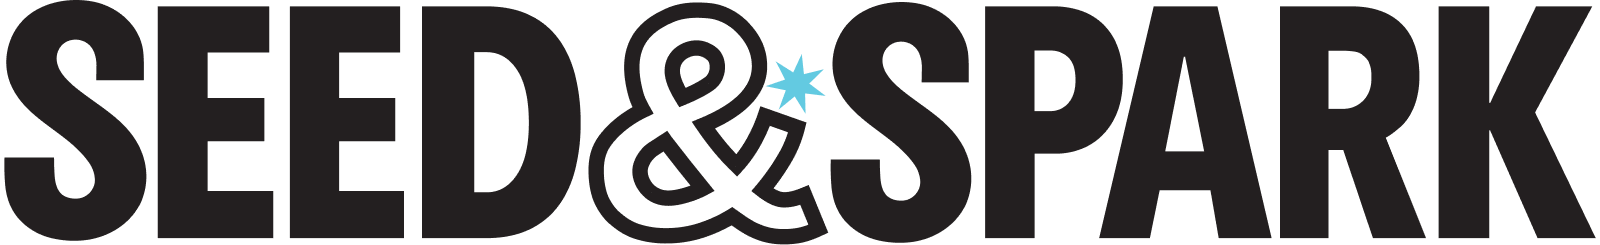 Seed_Spark-logo-default.png